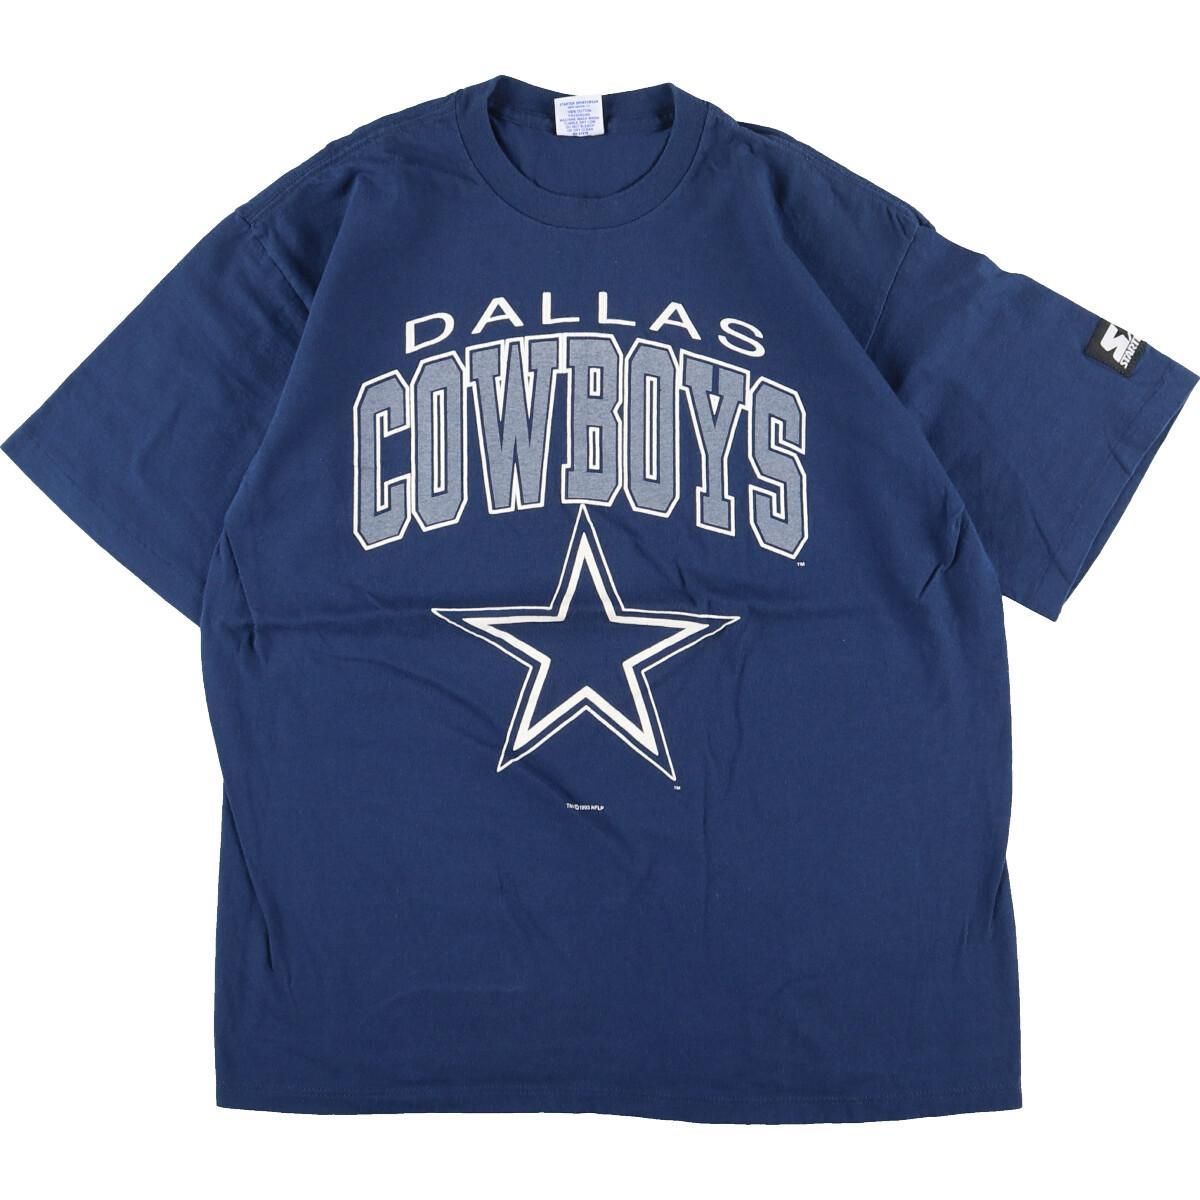 最新作売れ筋が満載 Dallas Cowboys Tシャツ M ダラス・カウボーイズ